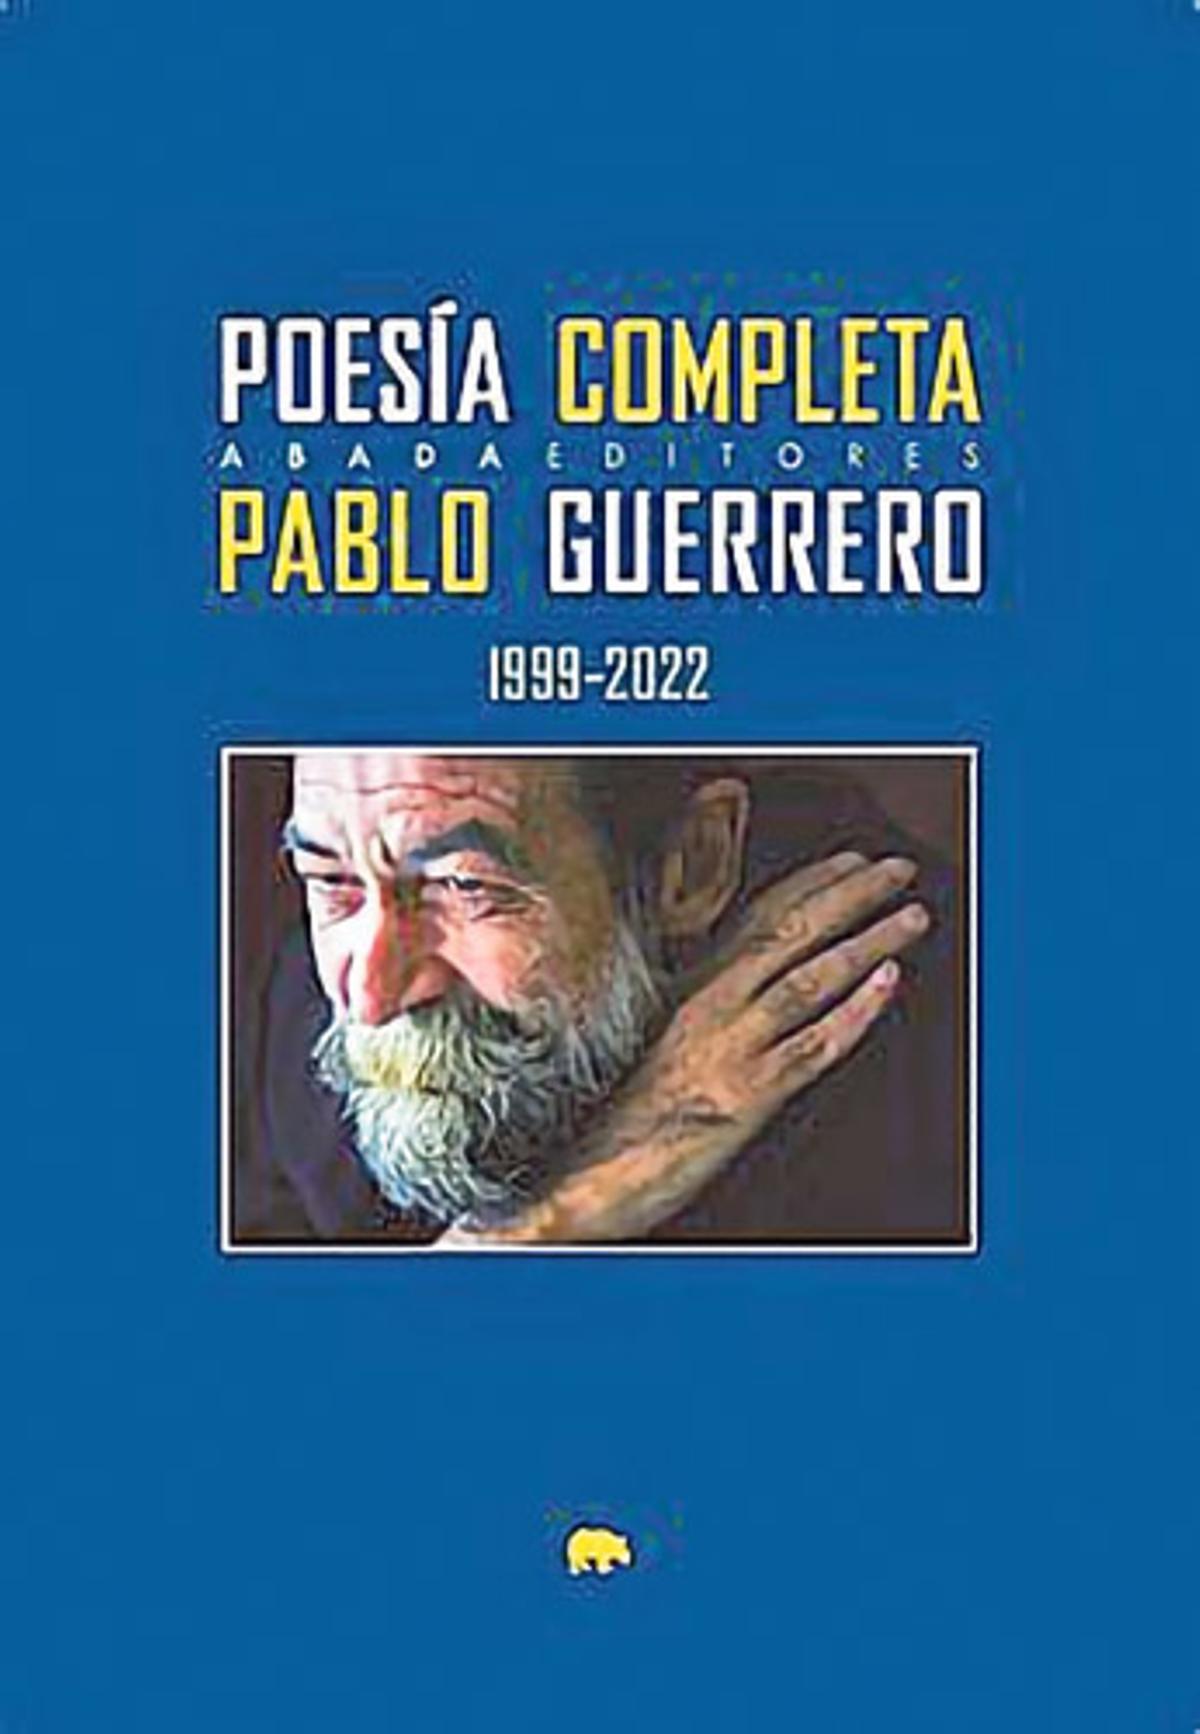 Poesía completa (1999-2022) Pablo Guerrero